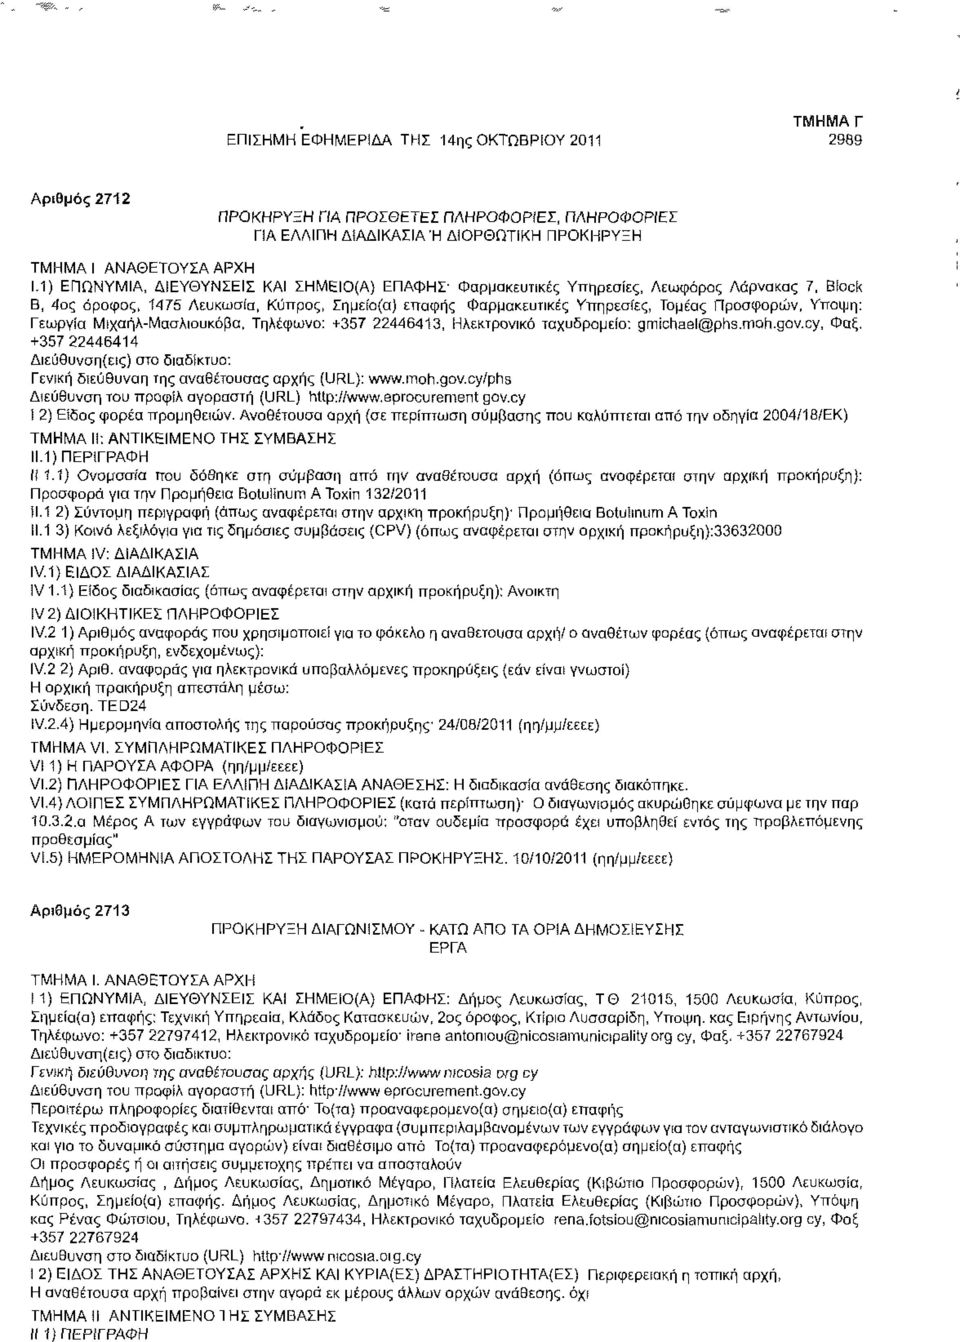 ΔΙΕΥΘΥΝΣΕΙΣ ΚΑΙ ΣΗΜΕΙΟ(Α) ΕΠΑΦΗΣ' Φαρμακευτικές Υπηρεσίες, Λεωφόρος Λάρνακας 7, Block β, 4ος όροφος, 1475 Λευκωσία, Κύπρος, Σημείο(α) επαφής Φαρμακευτικές Υπηρεσίες, Τομέας Προσφορών, Υπόψη: Γεωργία